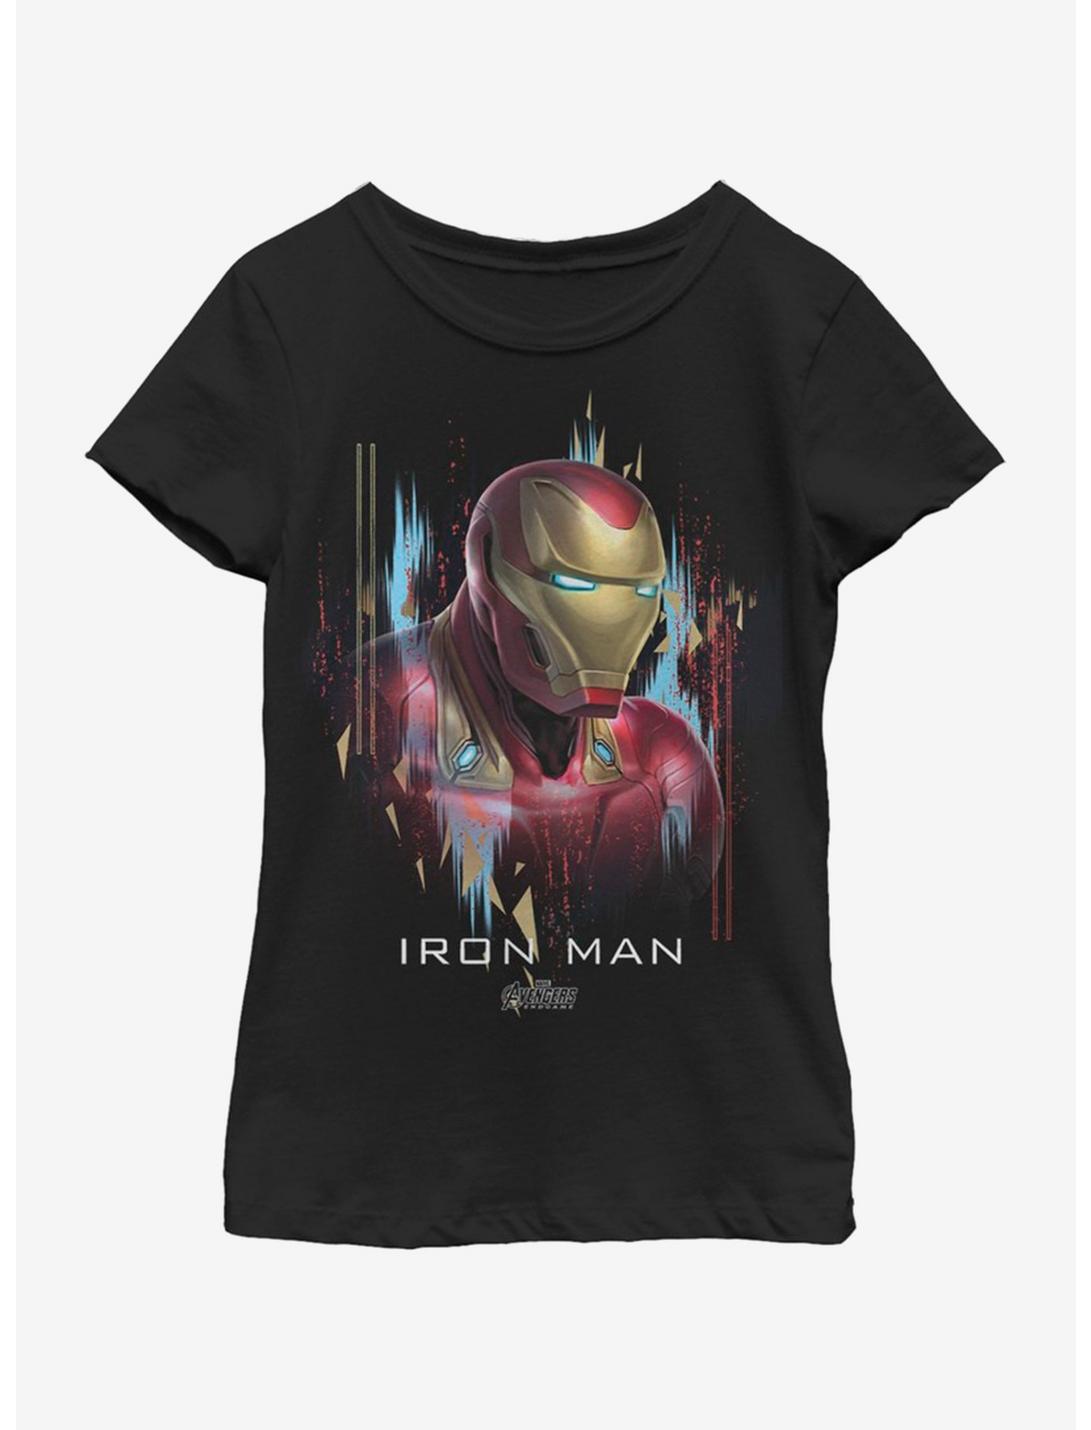 Marvel Avengers: Endgame Ironman Portrait Youth Girls T-Shirt, BLACK, hi-res